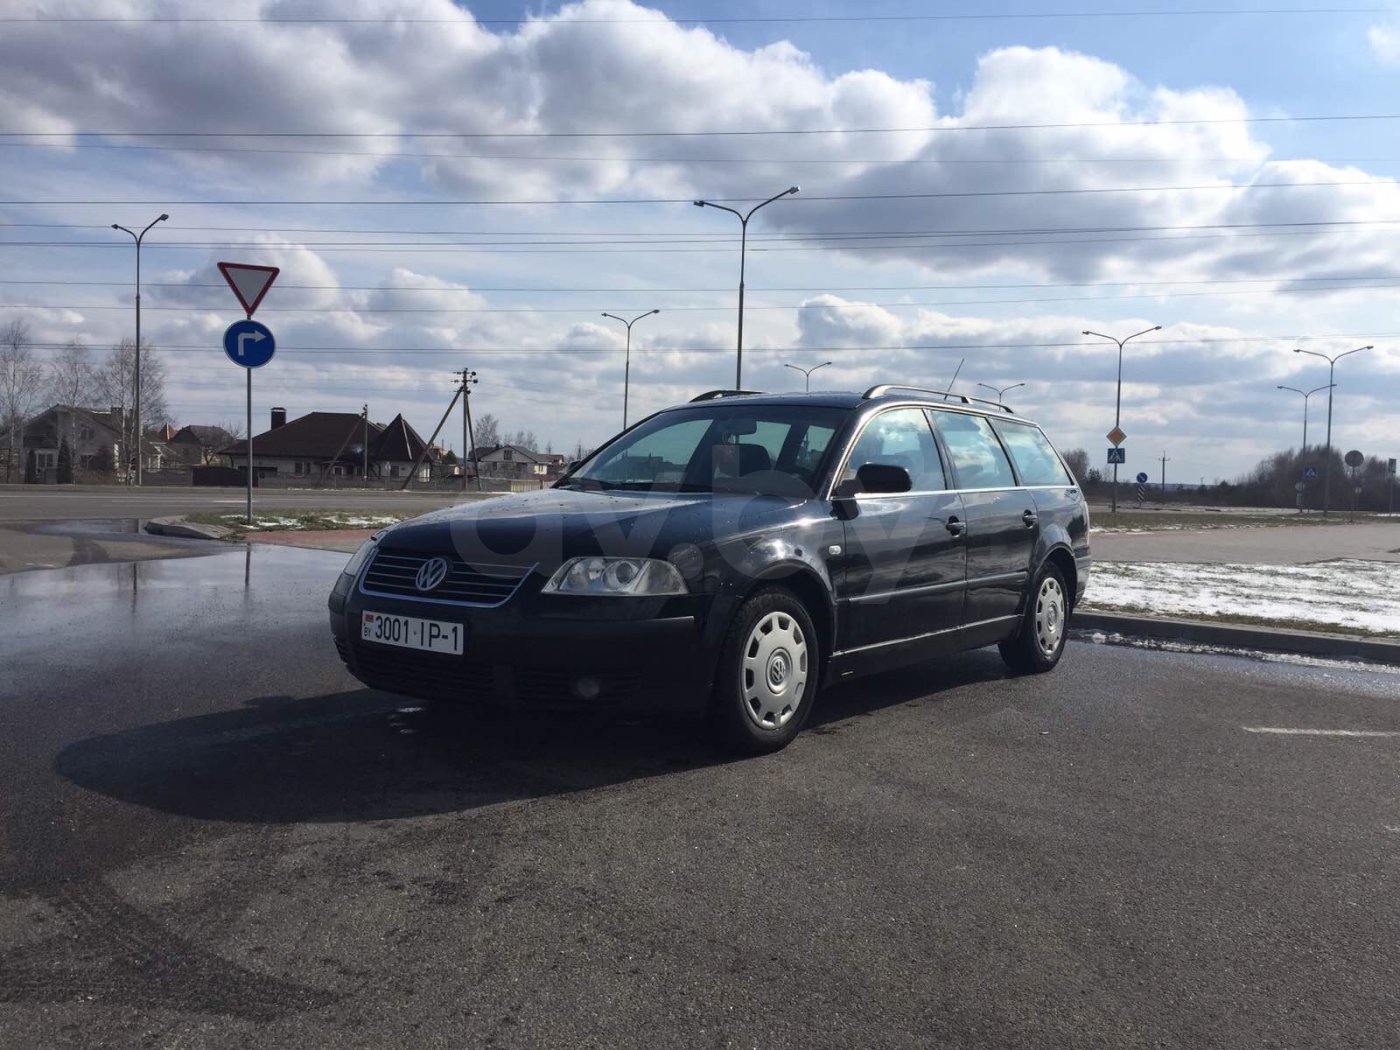 АВ бай продажа авто в Беларуси. Ав бай продажа авто в минске бу